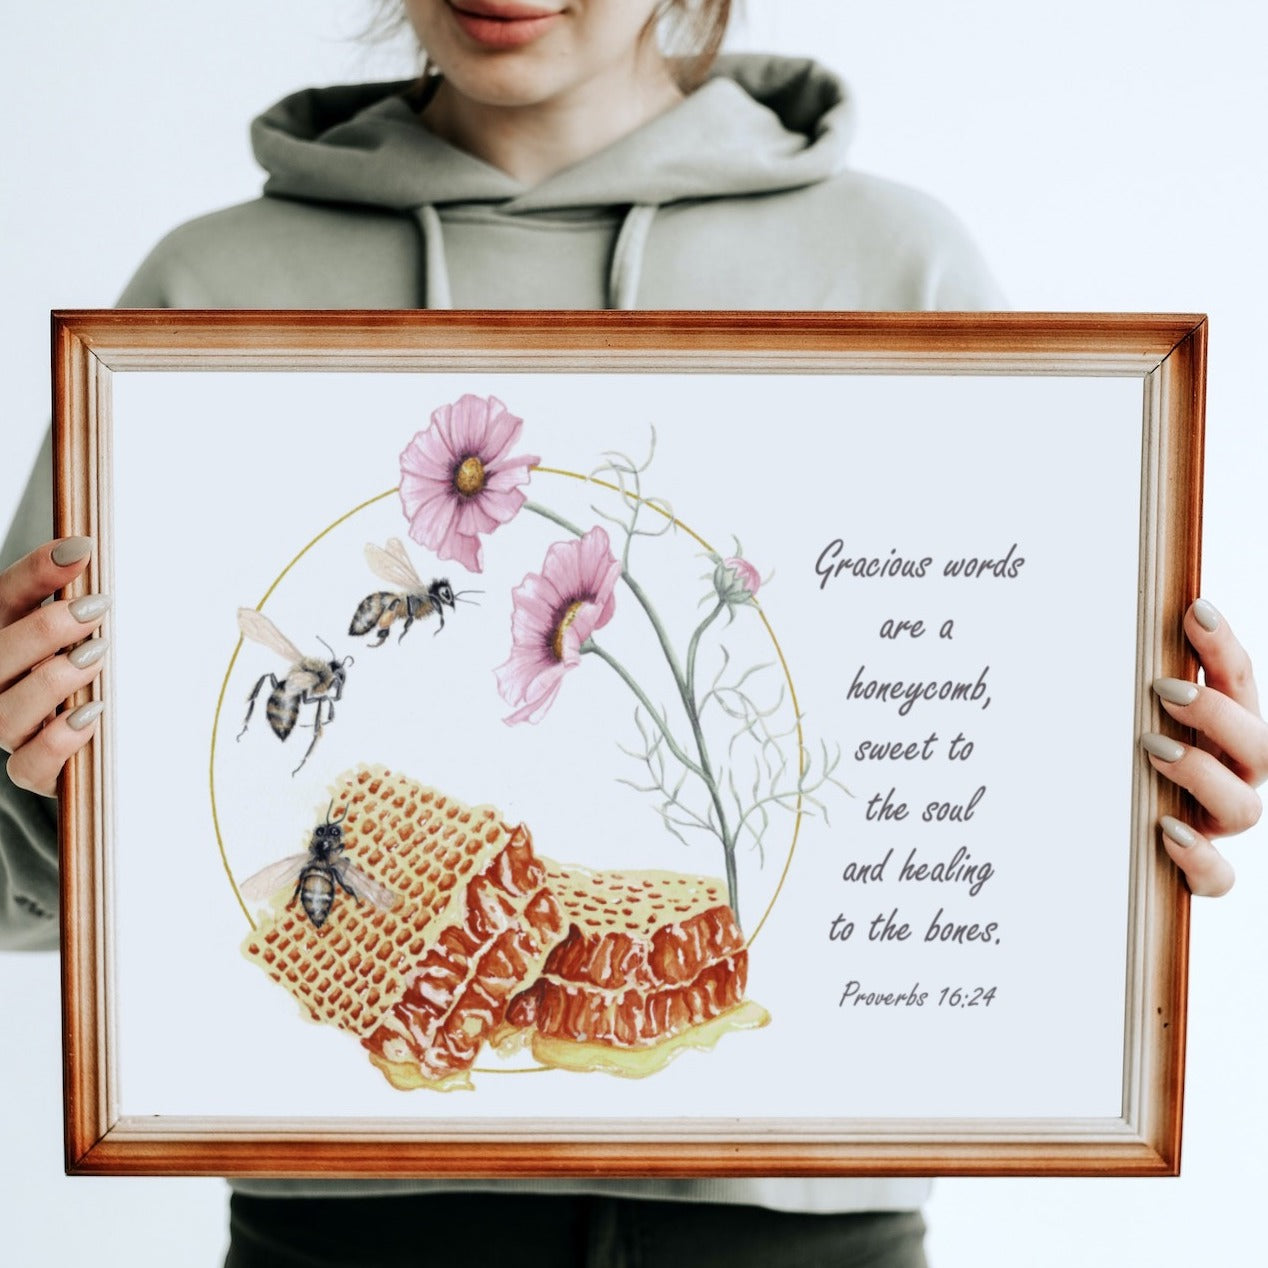 Honeybee Scripture Art Print - Proverbs 16:24